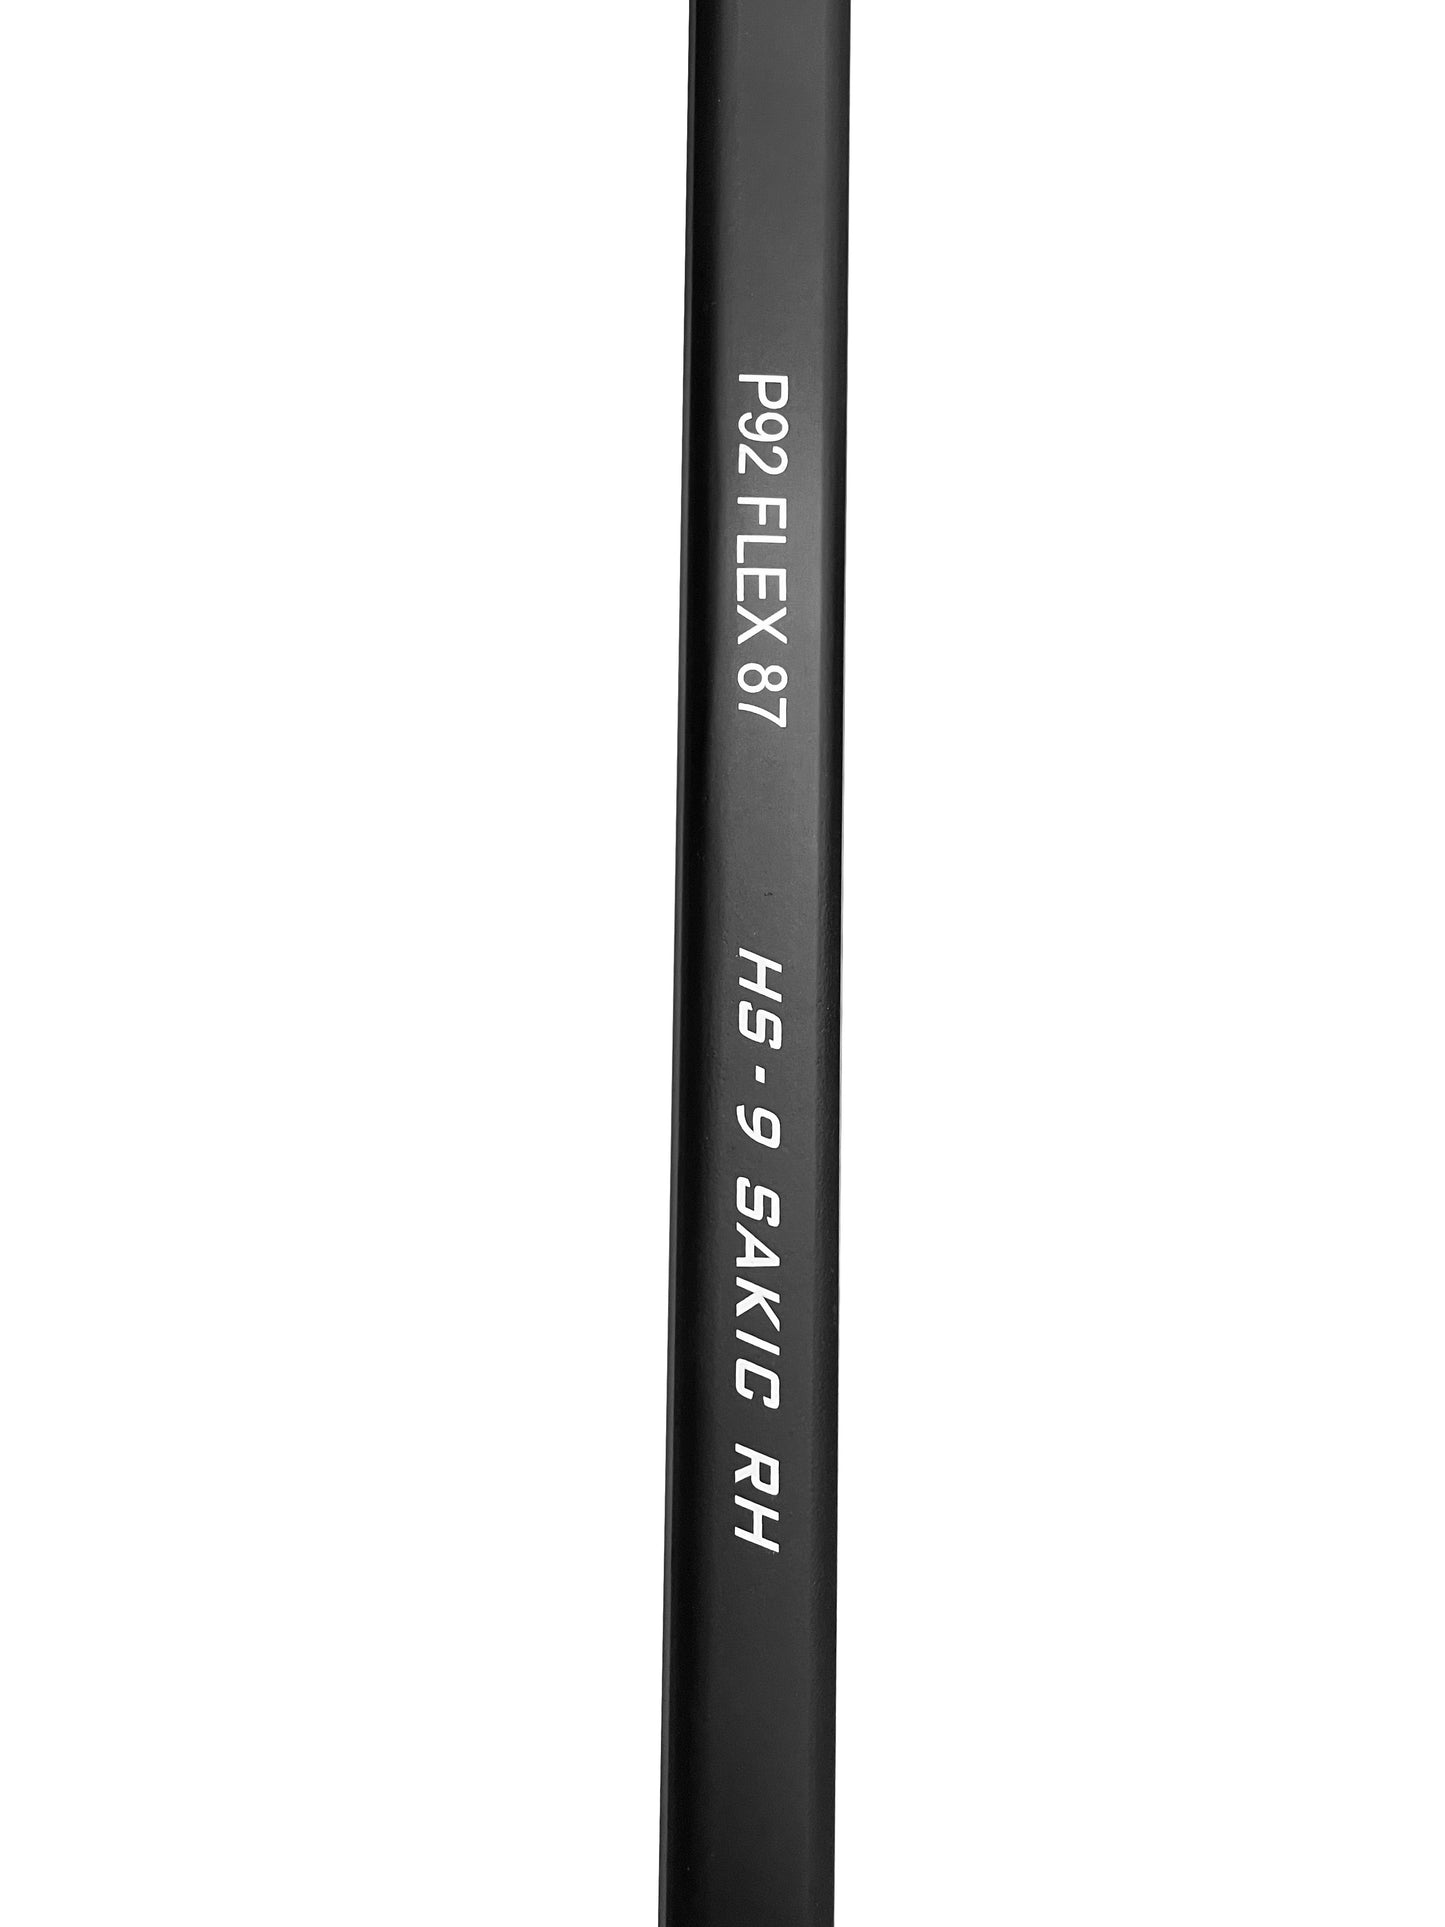 HS-09 Mazza da hockey in carbonio ad alto modulo